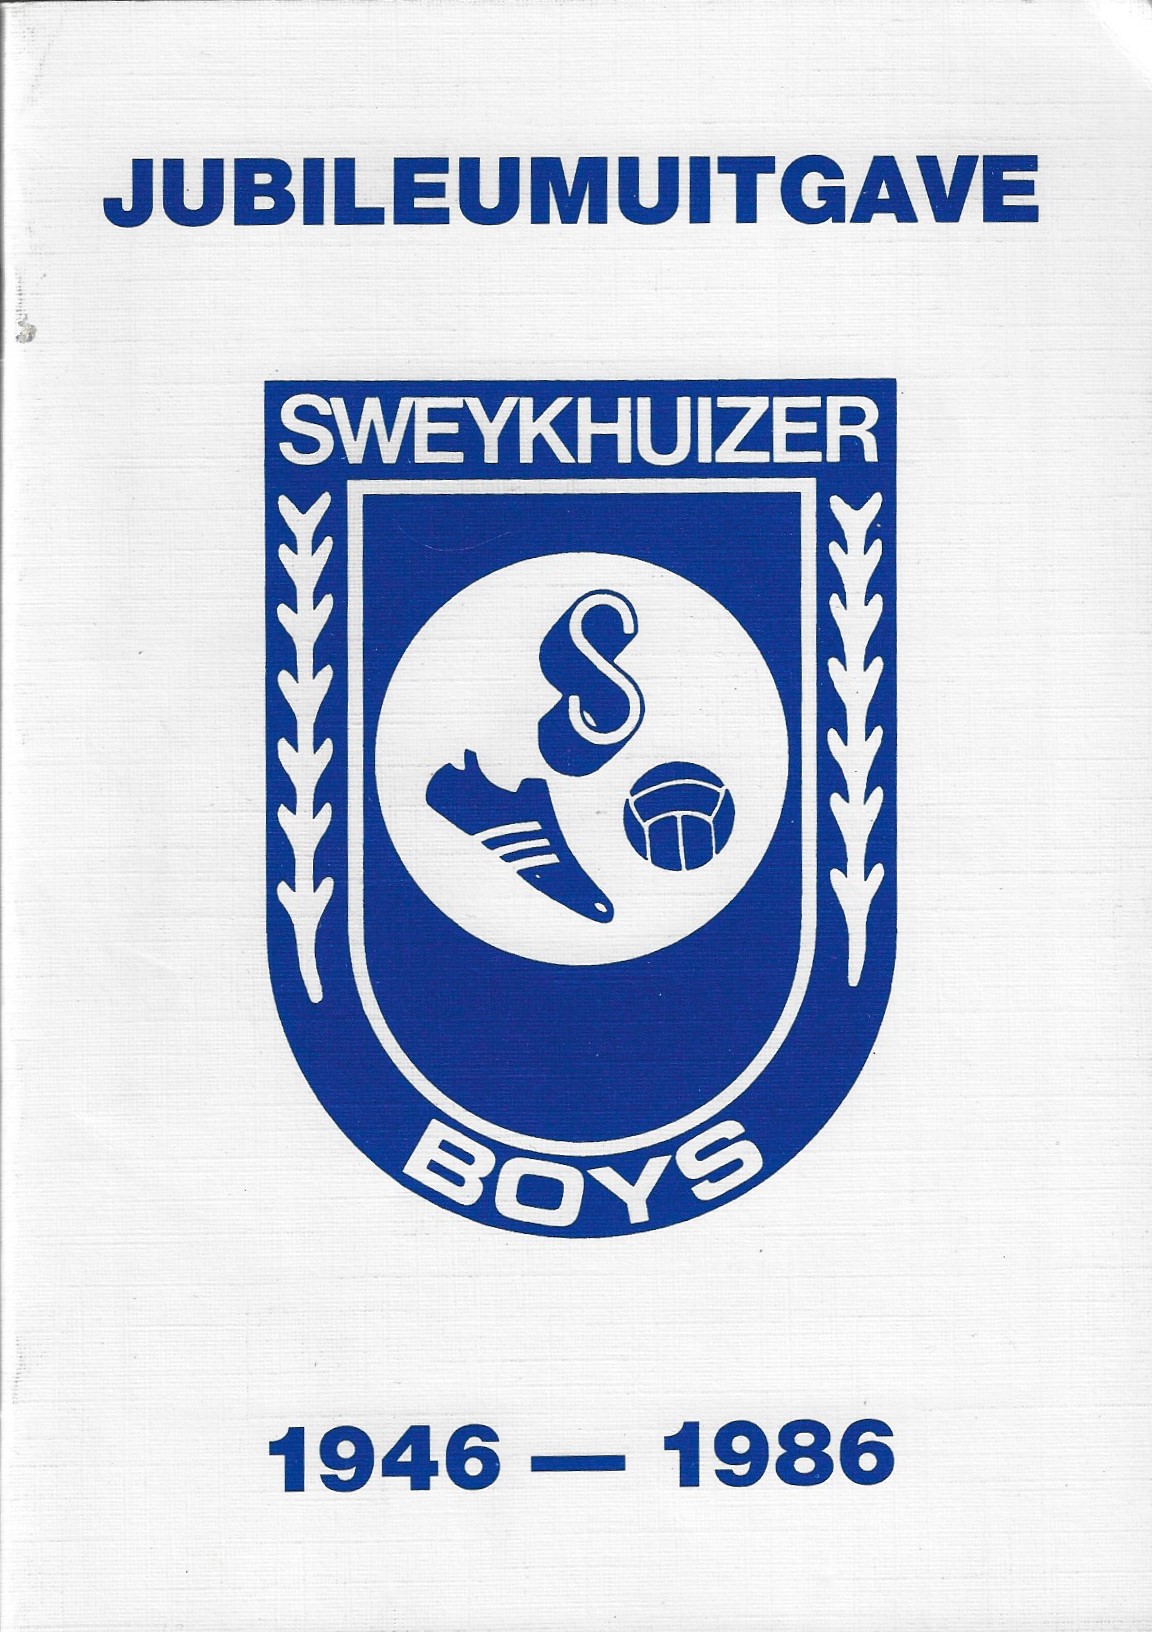 Creuwels, Martin - Jubileumuitgave Sweykhuizer Boys 1946-1986